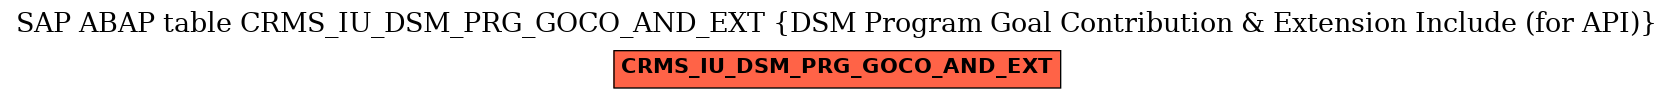 E-R Diagram for table CRMS_IU_DSM_PRG_GOCO_AND_EXT (DSM Program Goal Contribution & Extension Include (for API))